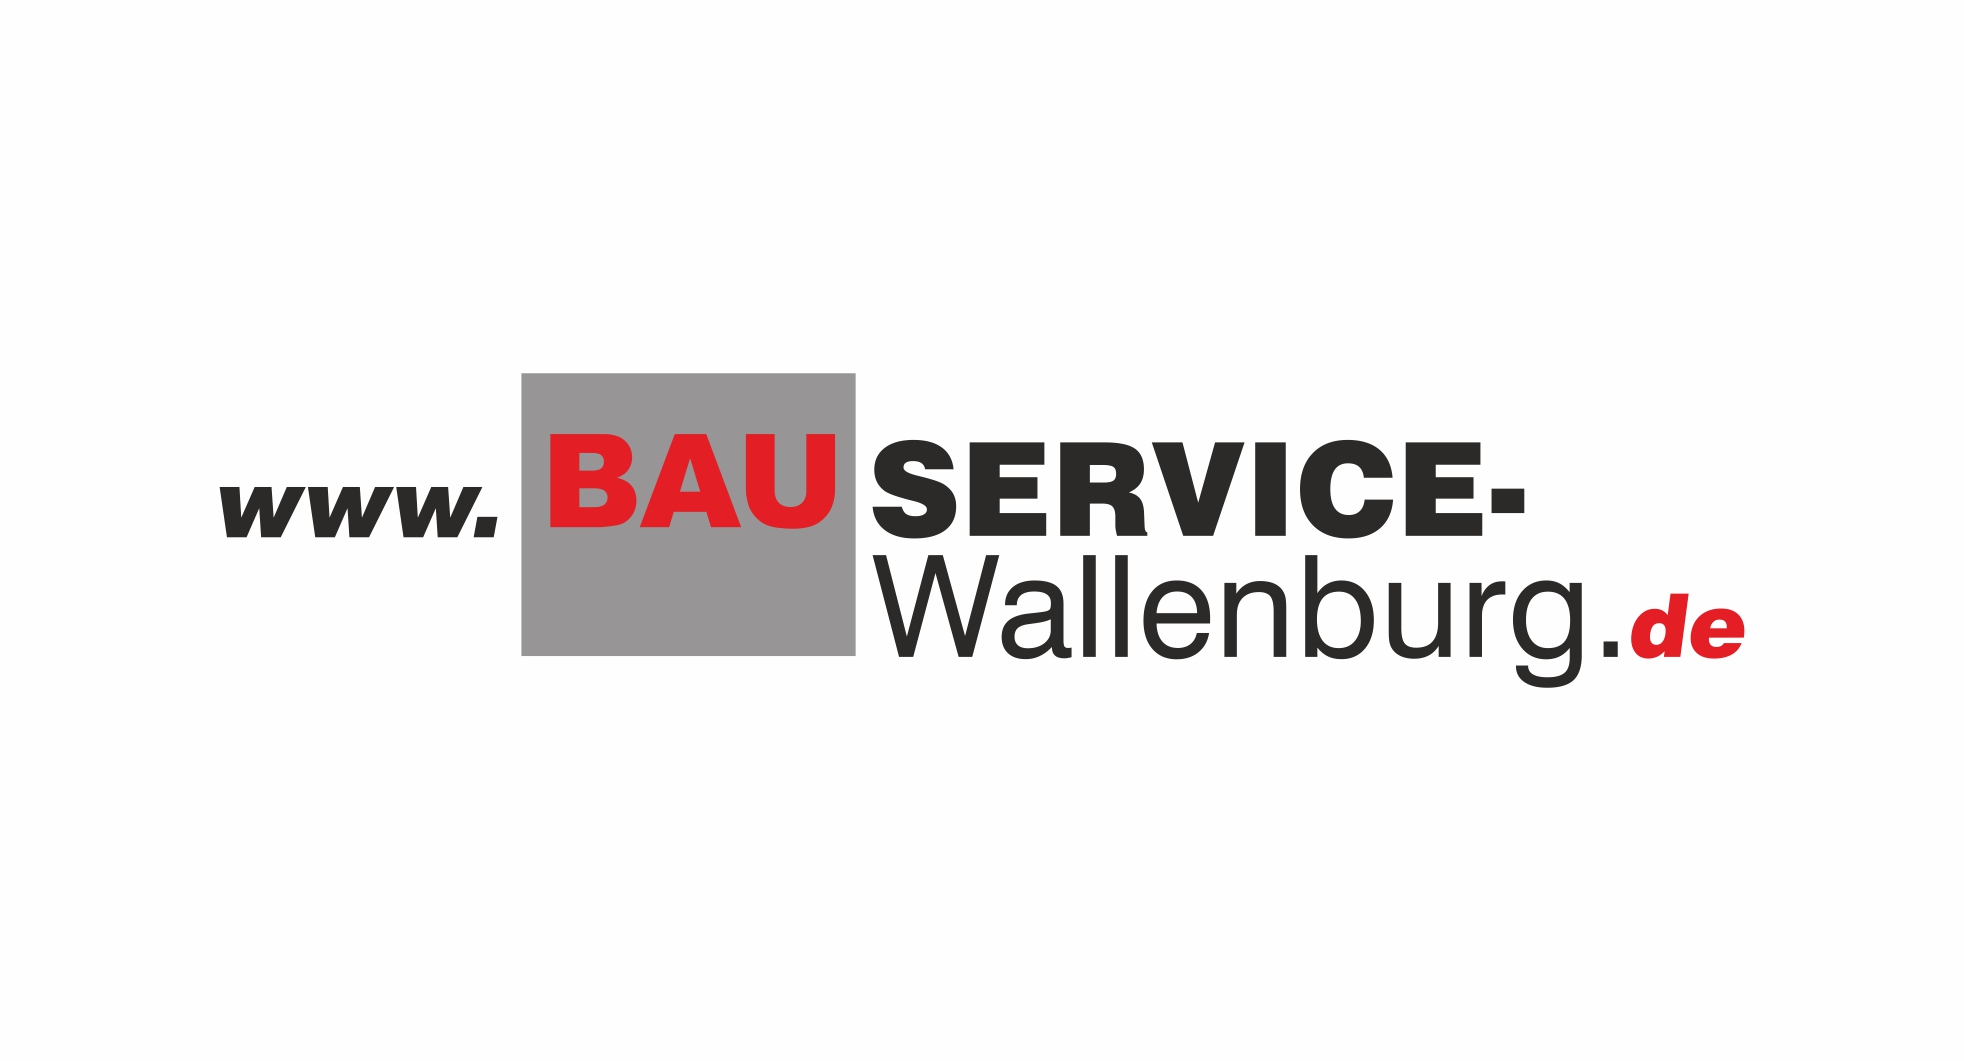 BS Wallenburg